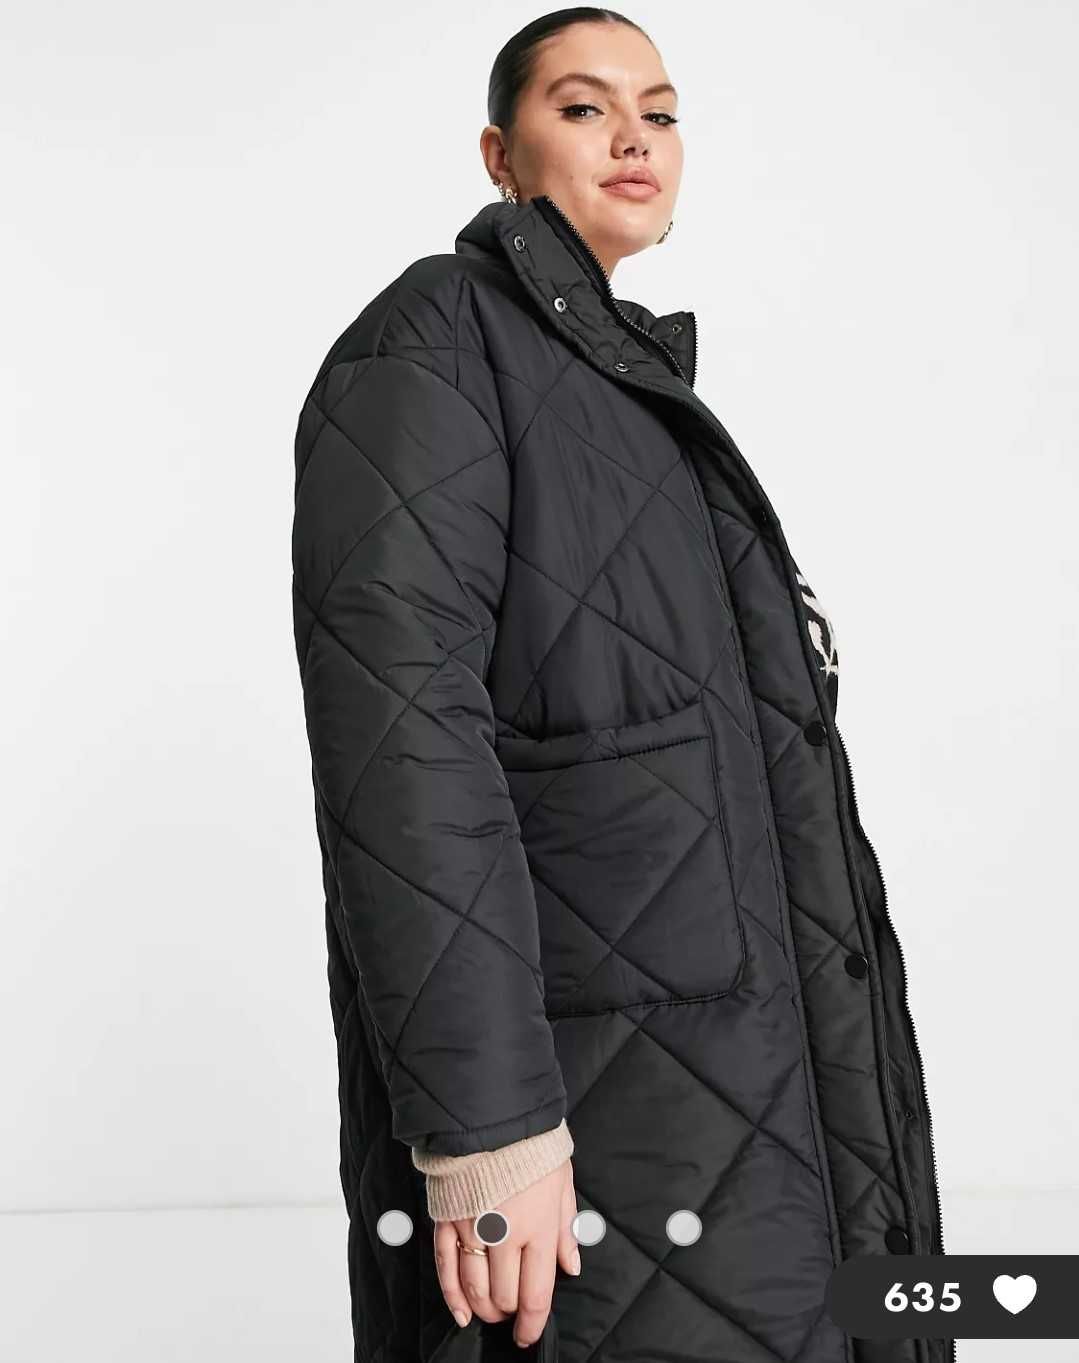 Удлиненная куртка пальто, большой размер 54-58, Англия, Asos